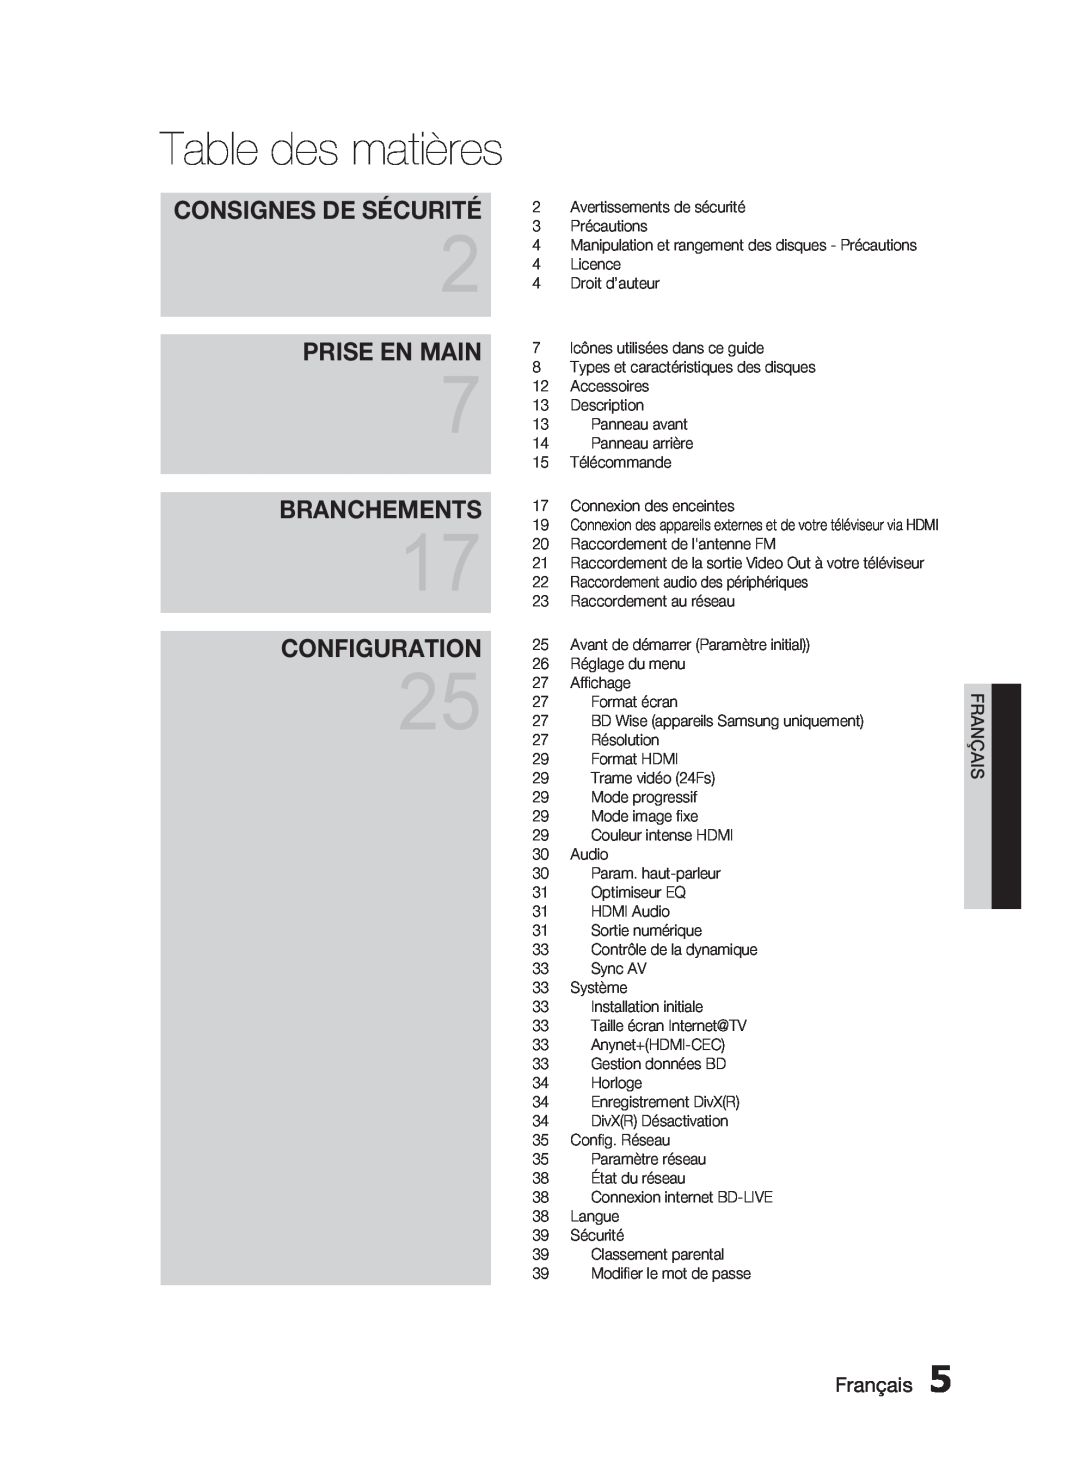 Samsung HT-C6200/XEF manual Table des matières, Prise En Main, Branchements, Configuration, Consignes De Sécurité, Français 